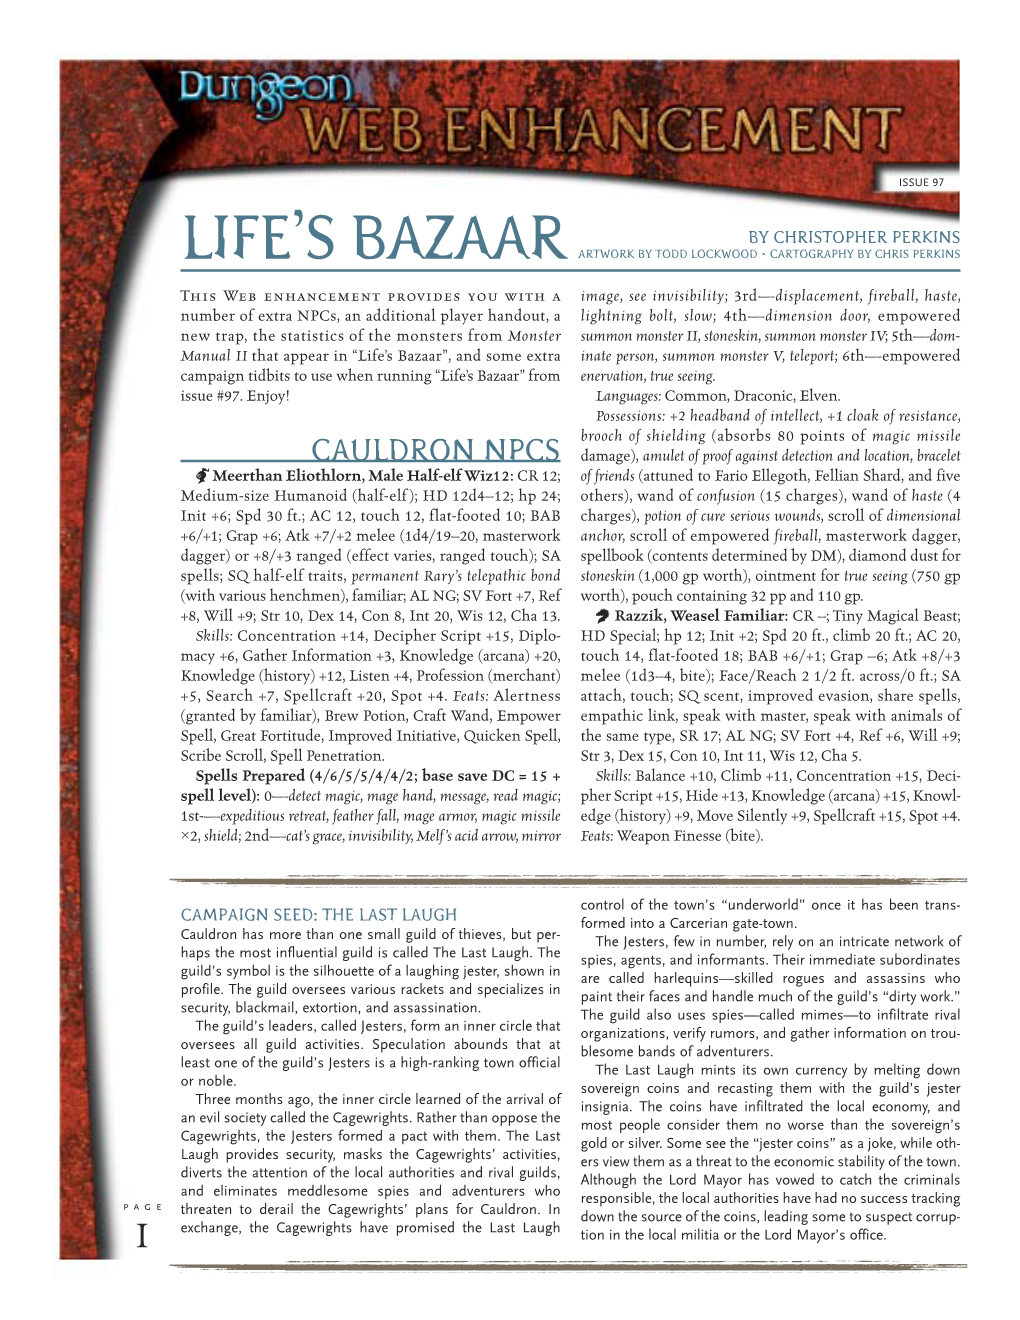 Life's Bazaar Web Enhancement